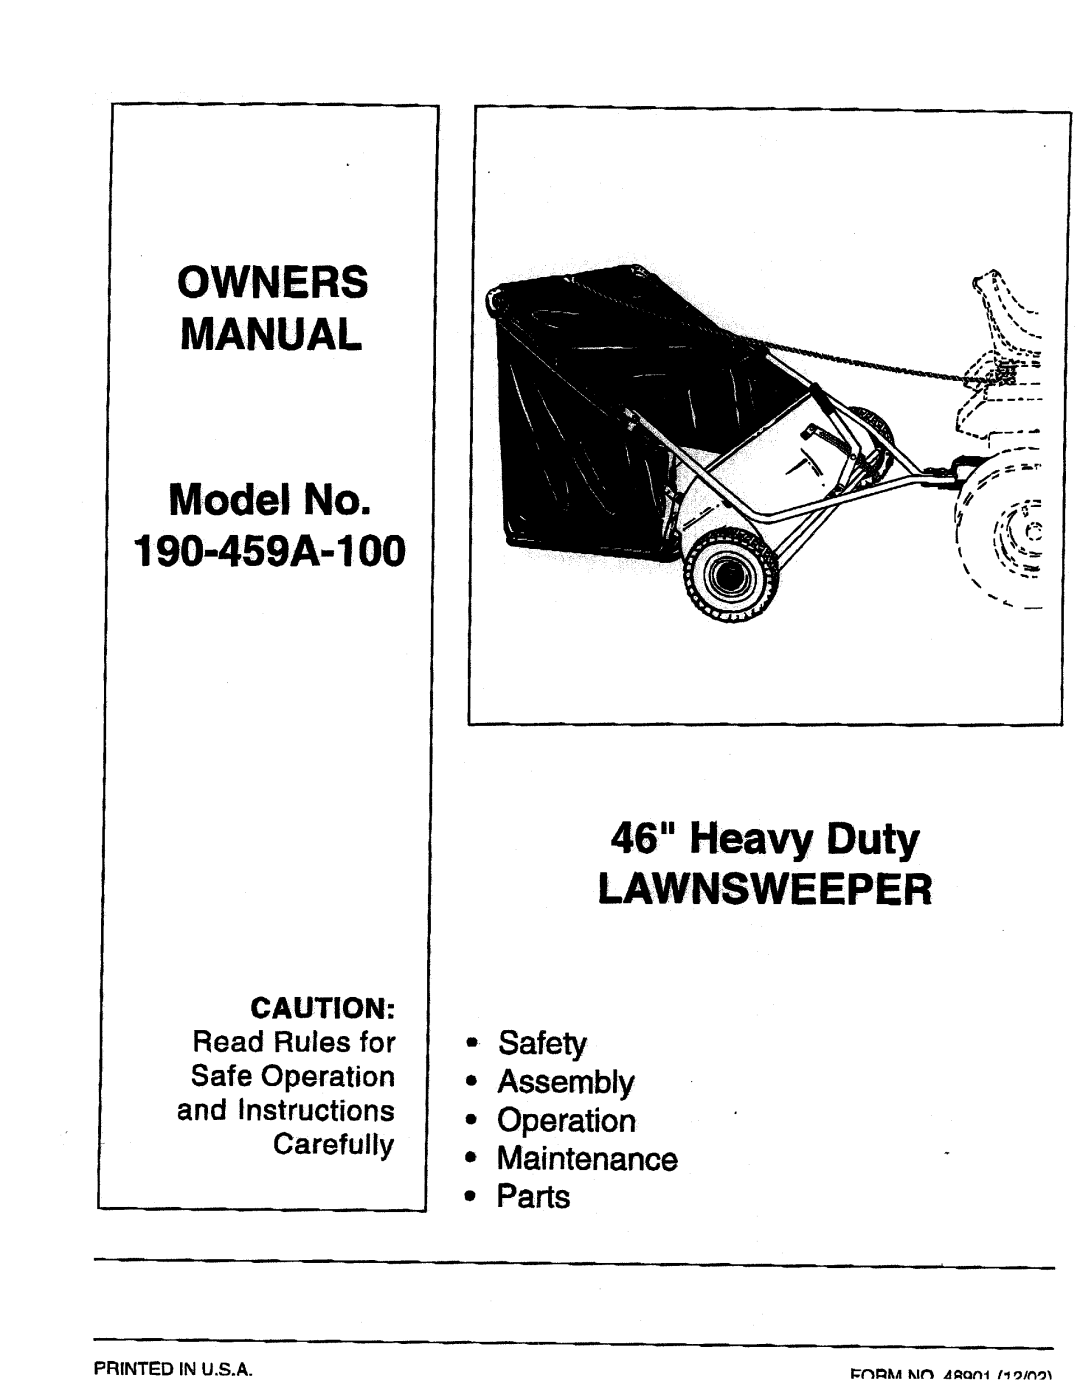 MTD 190-459A-100 manual 